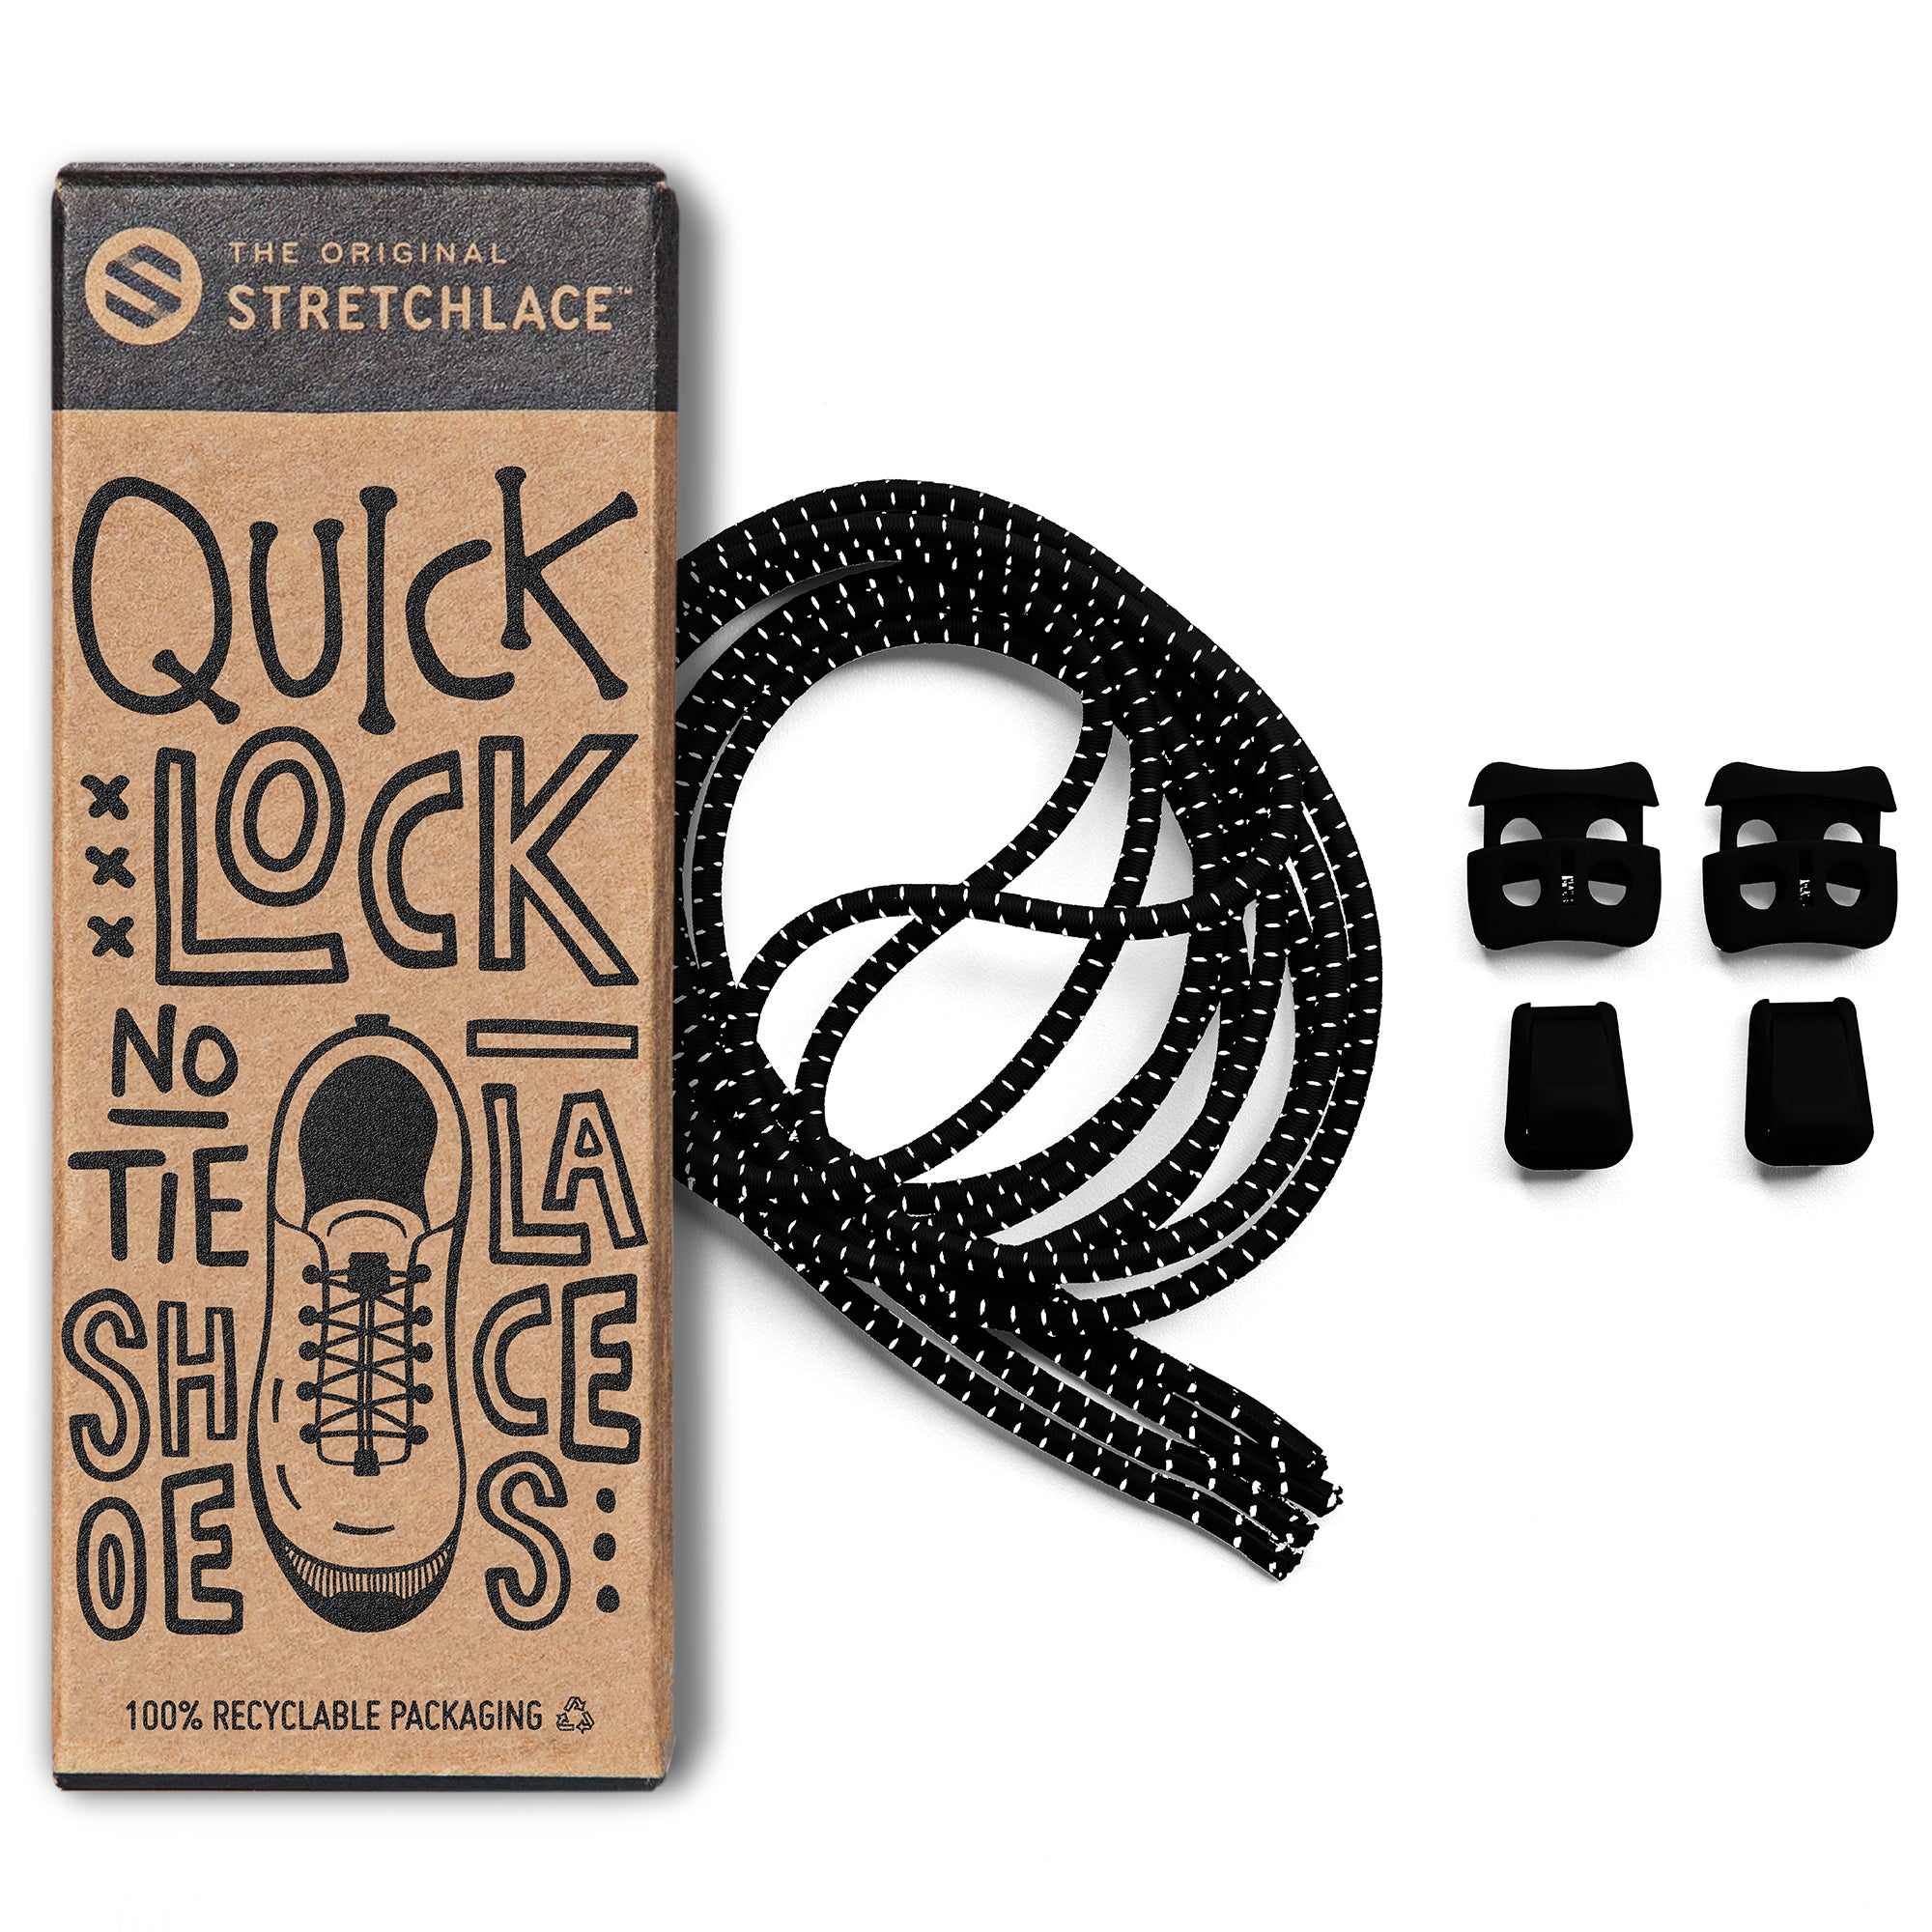 Black Unisex Elastic Shoelace, Locklaces